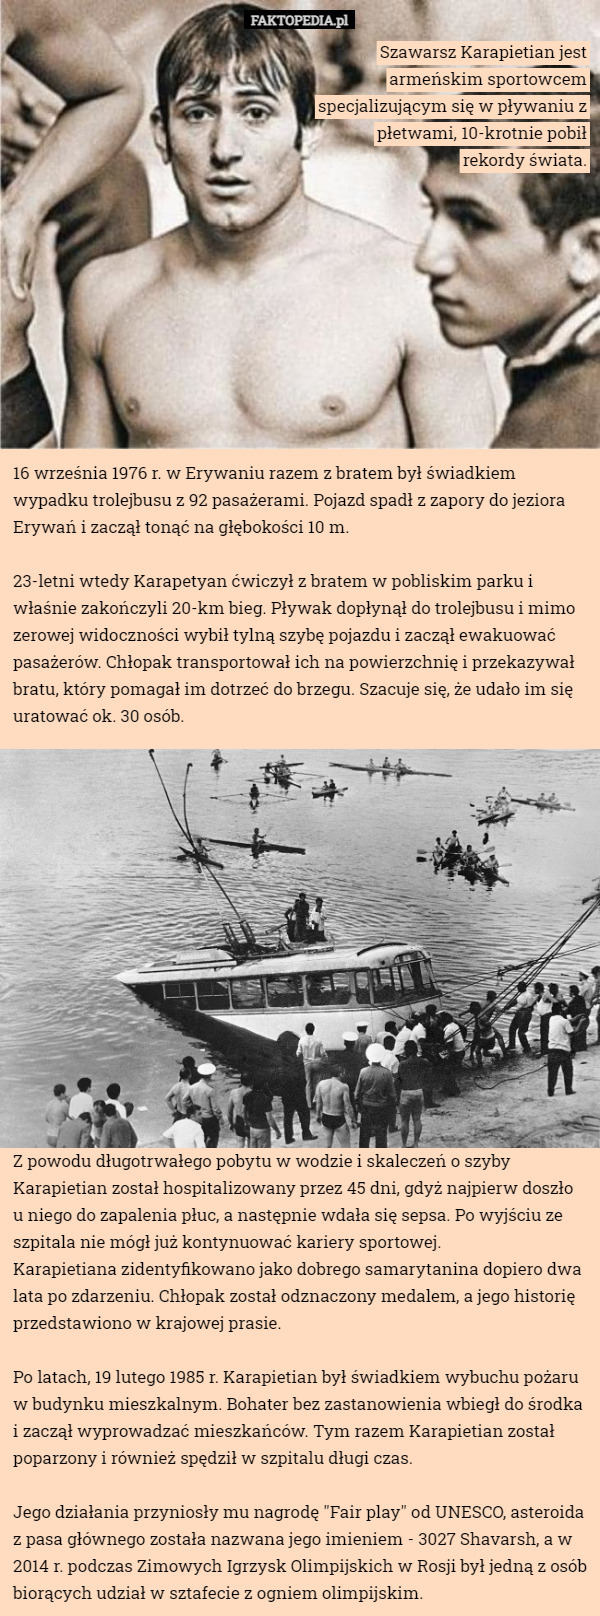 Szawarsz Karapietian jest armeńskim sportowcem specjalizującym się w pływaniu z płetwami, 10-krotnie pobił rekordy świata. 16 września 1976 r. w Erywaniu razem z bratem był świadkiem wypadku trolejbusu z 92 pasażerami. Pojazd spadł z zapory do jeziora Erywań i zaczął tonąć na głębokości 10 m.

23-letni wtedy Karapetyan ćwiczył z bratem w pobliskim parku i właśnie zakończyli 20-km bieg. Pływak dopłynął do trolejbusu i mimo zerowej widoczności wybił tylną szybę pojazdu i zaczął ewakuować pasażerów. Chłopak transportował ich na powierzchnię i przekazywał bratu, który pomagał im dotrzeć do brzegu. Szacuje się, że udało im się uratować ok. 30 osób. Z powodu długotrwałego pobytu w wodzie i skaleczeń o szyby Karapietian został hospitalizowany przez 45 dni, gdyż najpierw doszło u niego do zapalenia płuc, a następnie wdała się sepsa. Po wyjściu ze szpitala nie mógł już kontynuować kariery sportowej.
Karapietiana zidentyfikowano jako dobrego samarytanina dopiero dwa lata po zdarzeniu. Chłopak został odznaczony medalem, a jego historię przedstawiono w krajowej prasie.

Po latach, 19 lutego 1985 r. Karapietian był świadkiem wybuchu pożaru w budynku mieszkalnym. Bohater bez zastanowienia wbiegł do środka i zaczął wyprowadzać mieszkańców. Tym razem Karapietian został poparzony i również spędził w szpitalu długi czas.

Jego działania przyniosły mu nagrodę "Fair play" od UNESCO, asteroida z pasa głównego została nazwana jego imieniem - 3027 Shavarsh, a w 2014 r. podczas Zimowych Igrzysk Olimpijskich w Rosji był jedną z osób biorących udział w sztafecie z ogniem olimpijskim. 